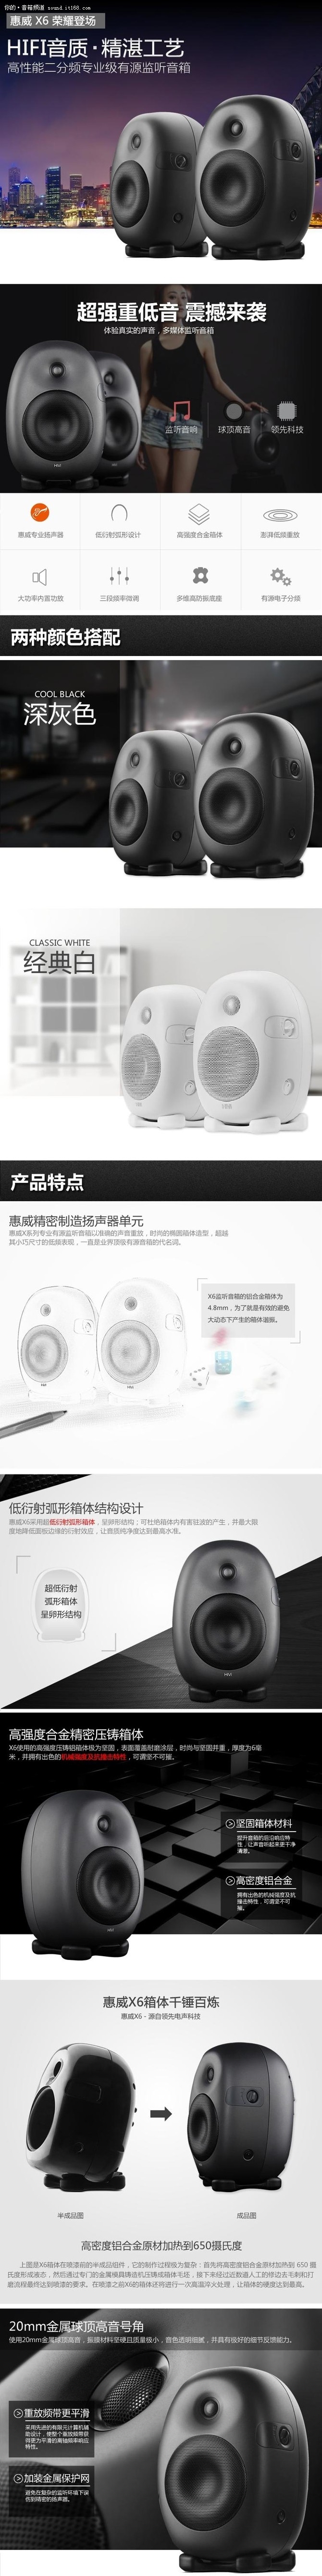 专属的音乐旅程 惠威 X6单件售4800元